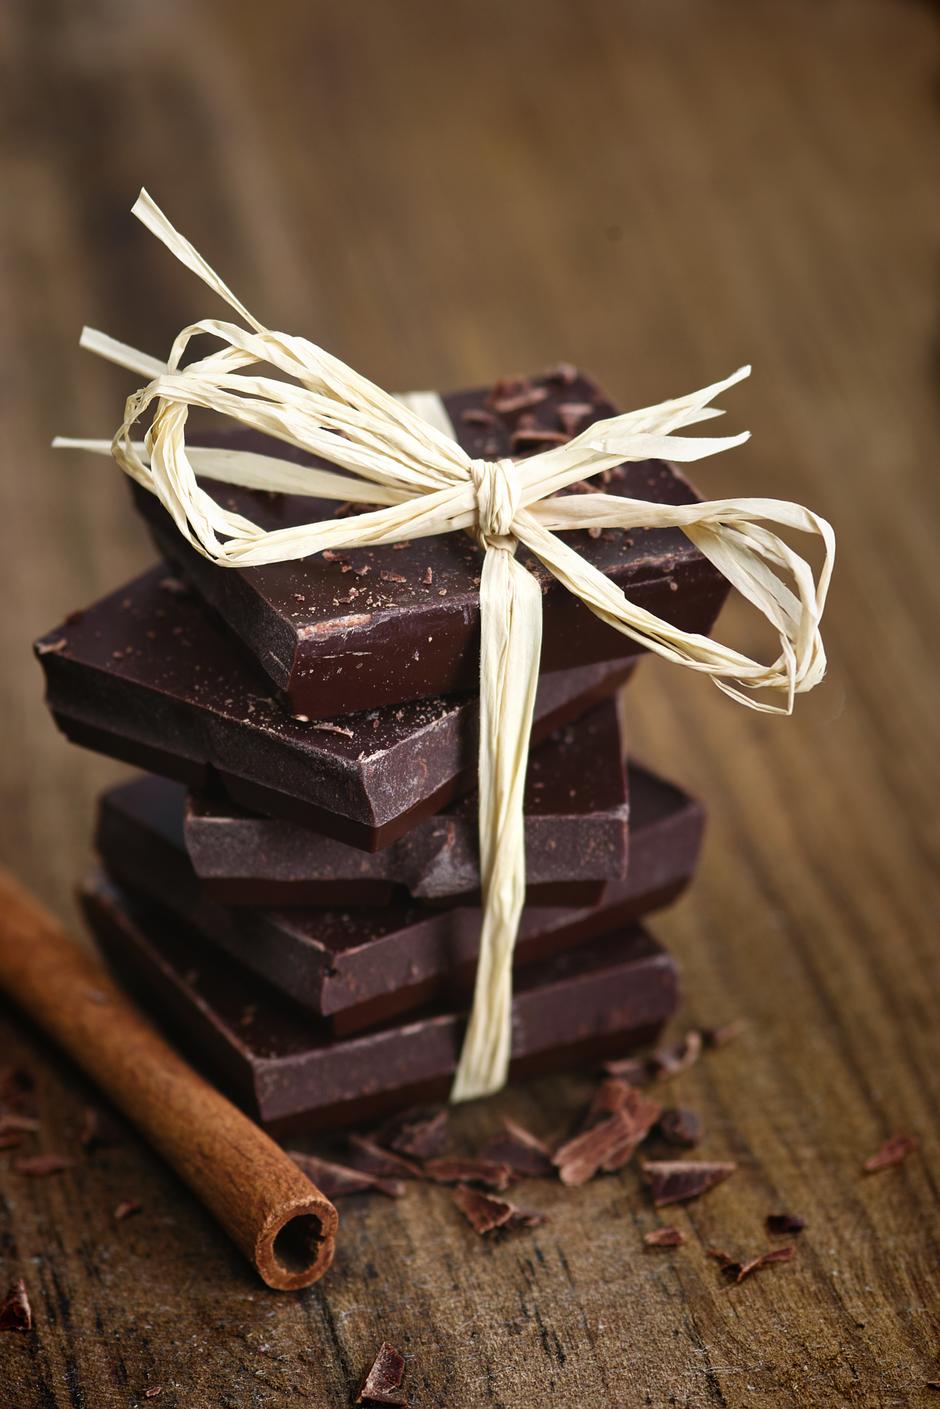 čokolada | Author: Thinkstock